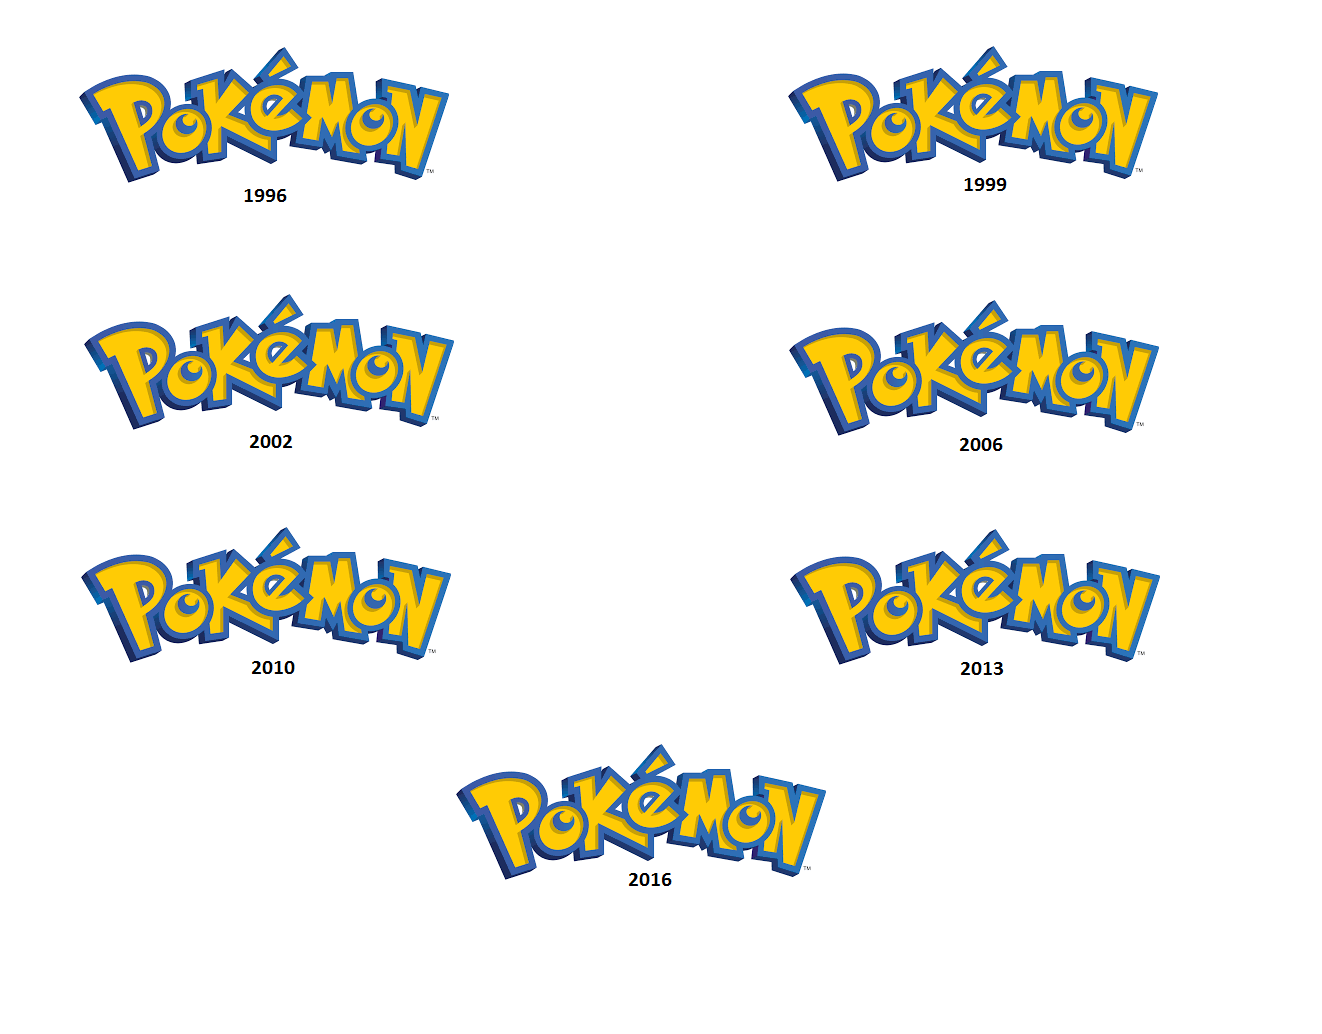 Pokemon Logo - The evolution of the Pokémon logo throughout the years